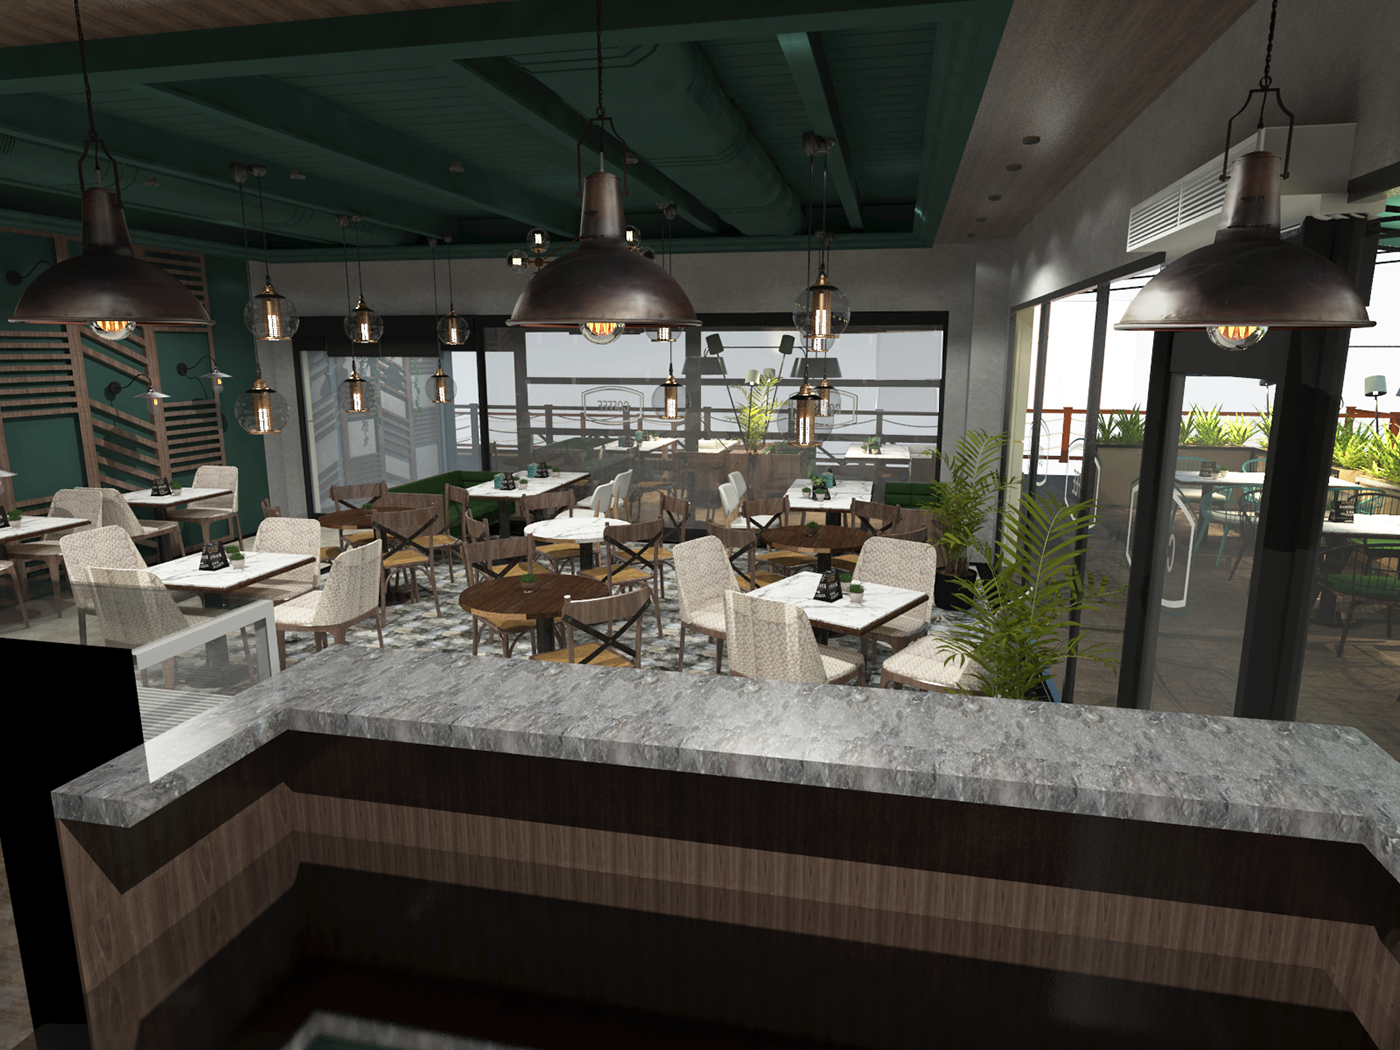 furnituredesign keyshot 3d modeling cafe Coffee coffee shop concept interior design  modern restaurant